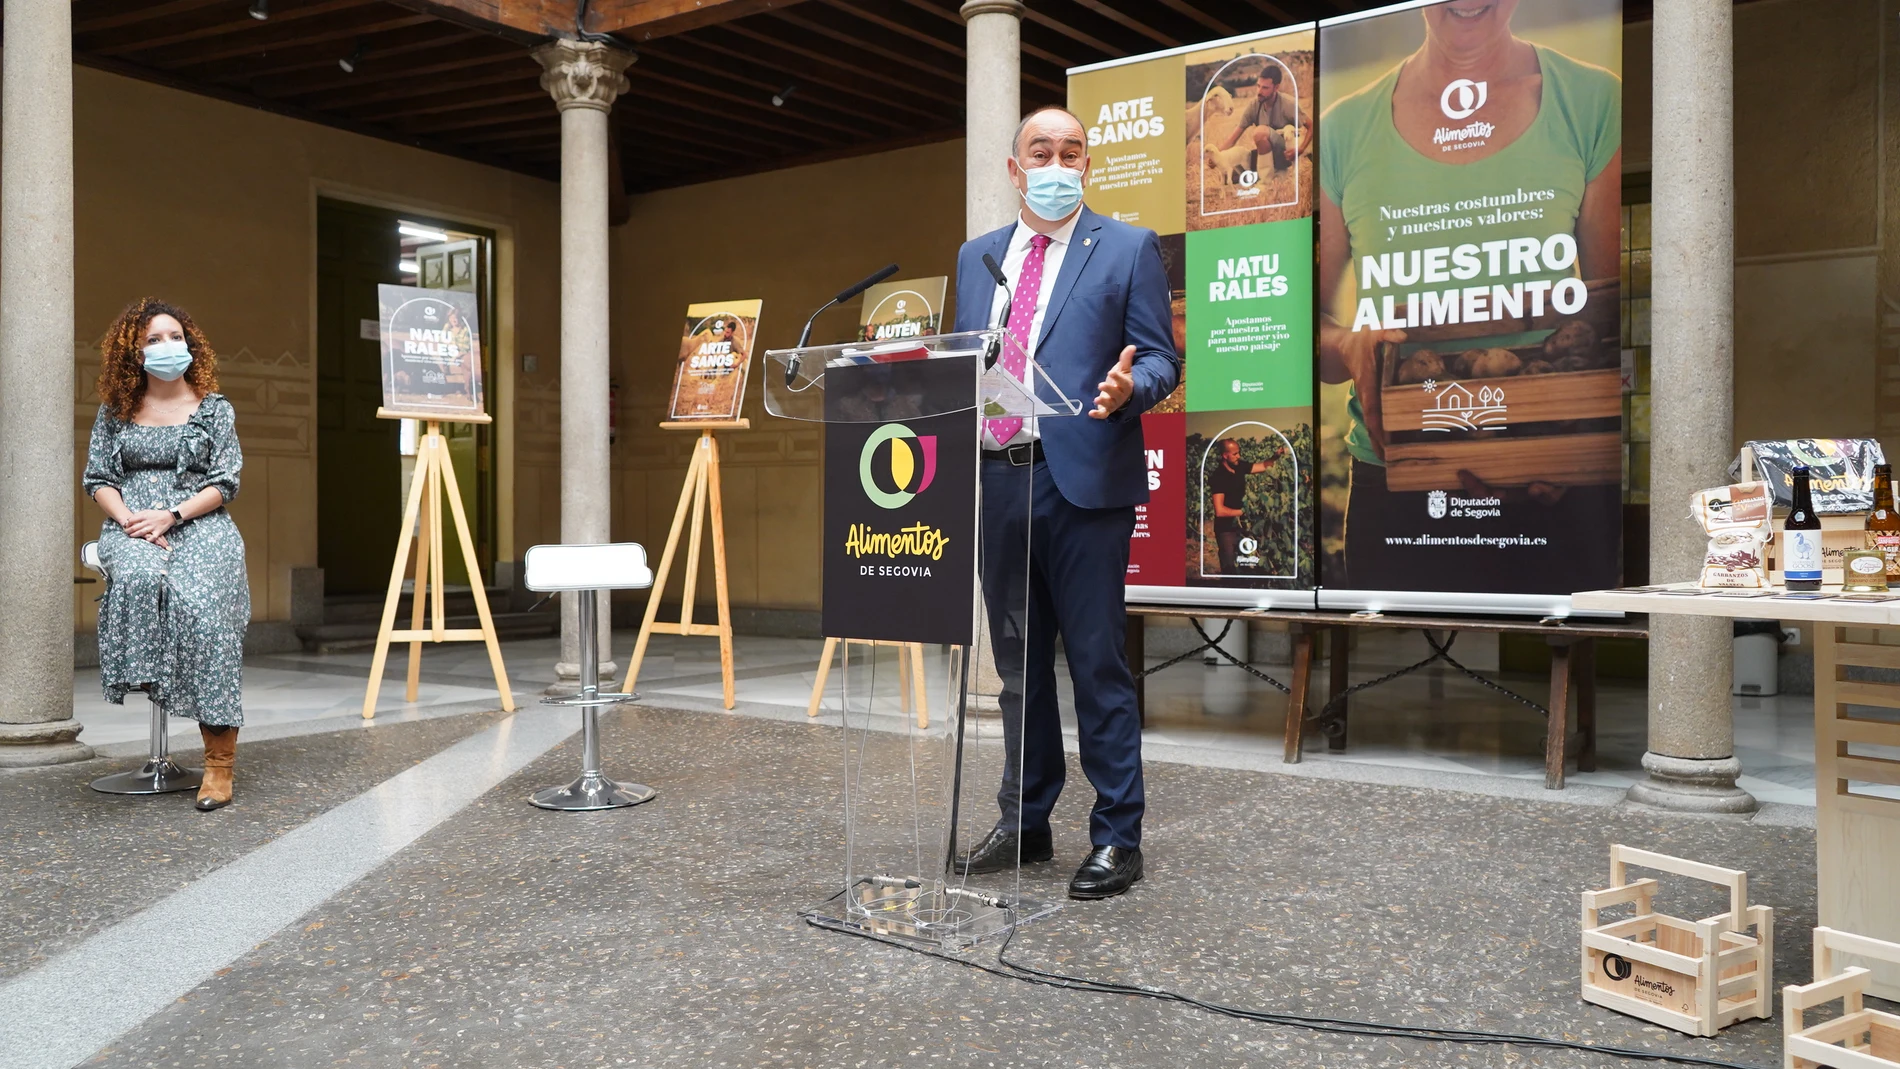 El presidente de la Diputación de Segovia, Miguel Ángel de Vicente, presenta la nueva campaña